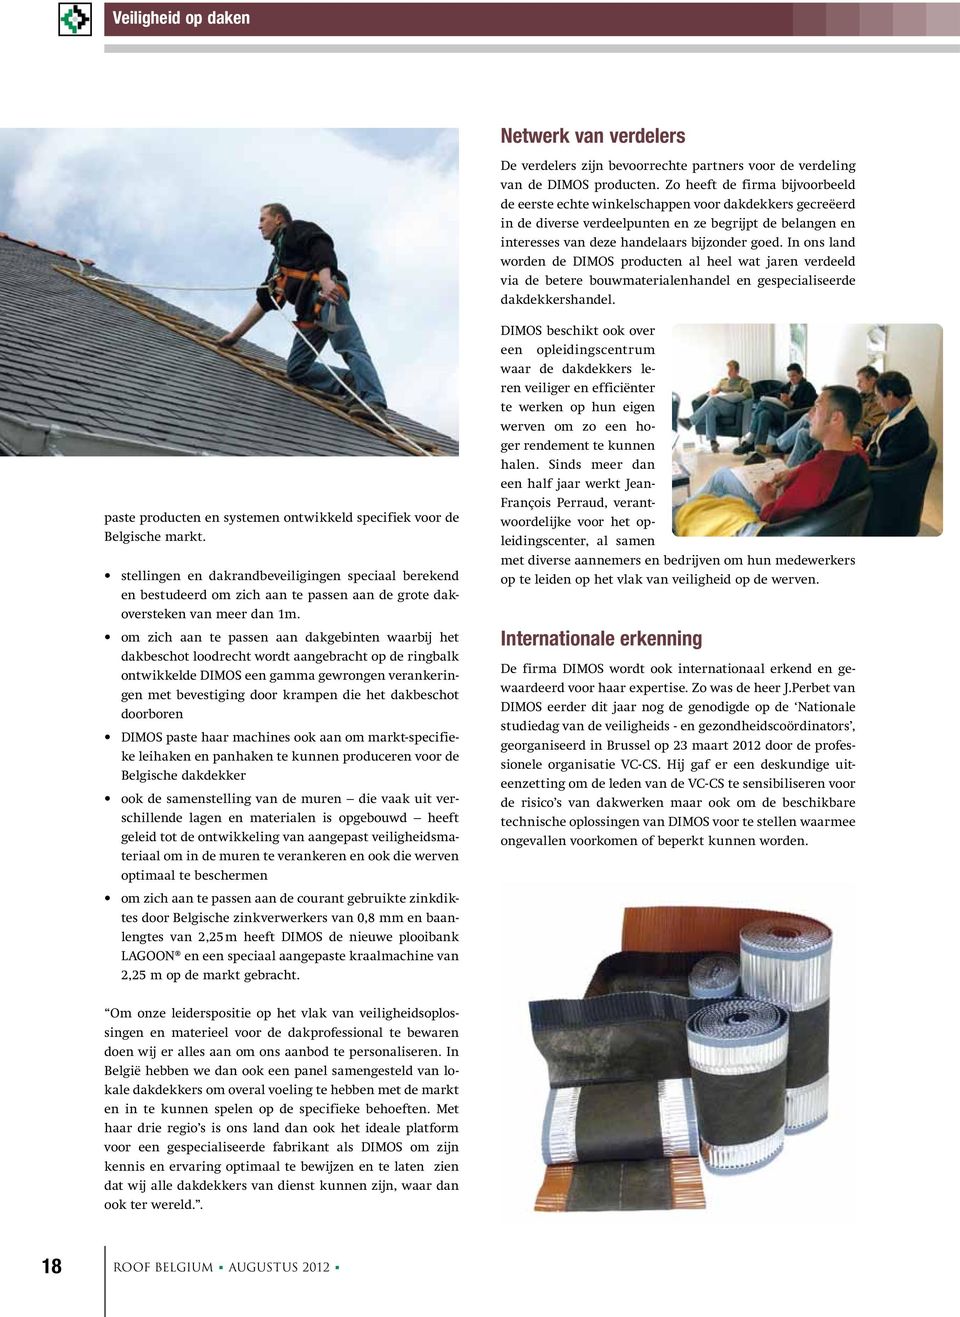 In ons land worden de DIMOS producten al heel wat jaren verdeeld via de betere bouwmaterialenhandel en gespecialiseerde dakdekkershandel.